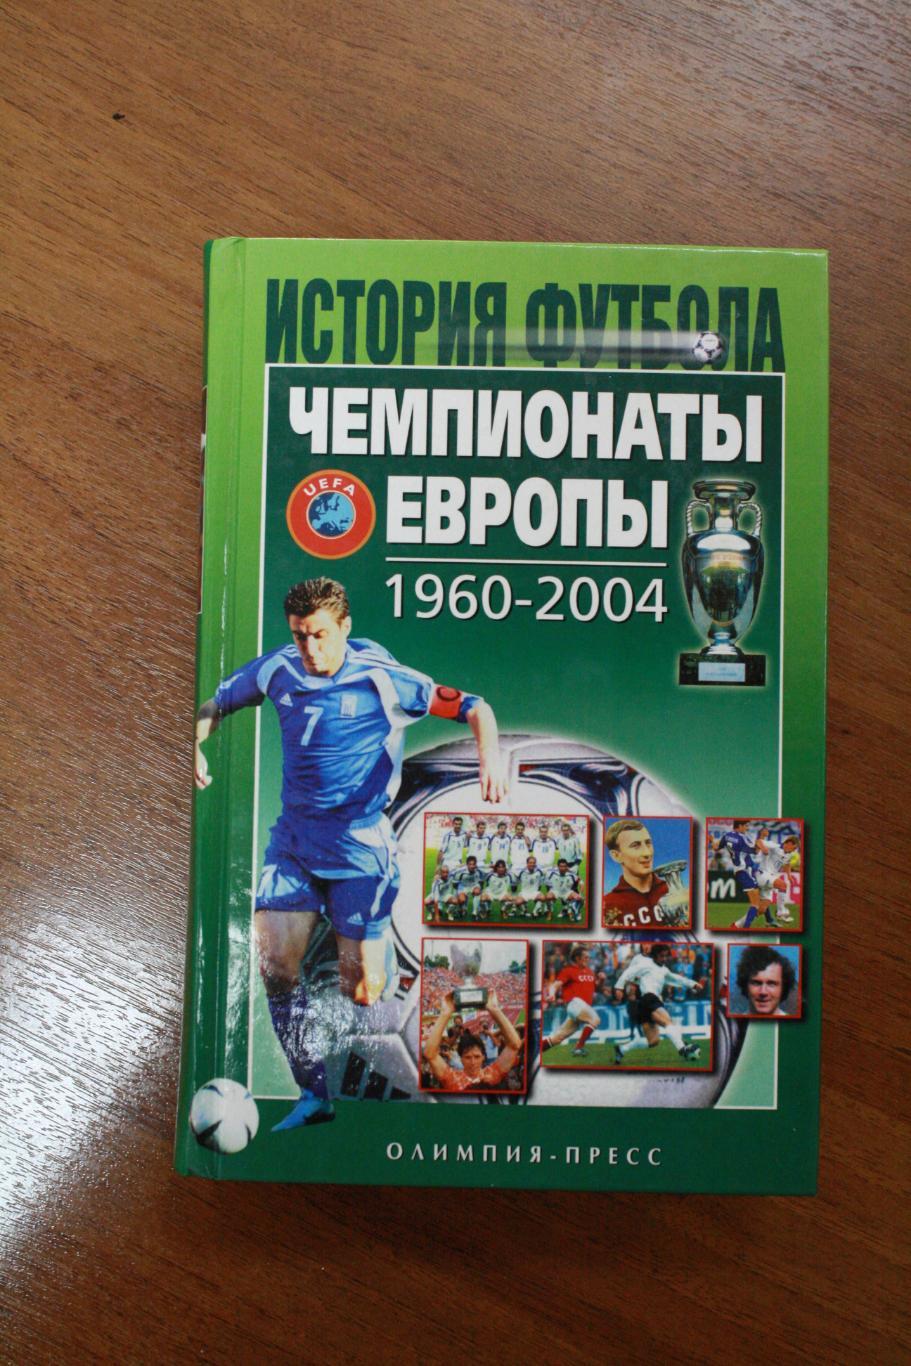 История футбола - Чемпионаты Европы 1960-2004